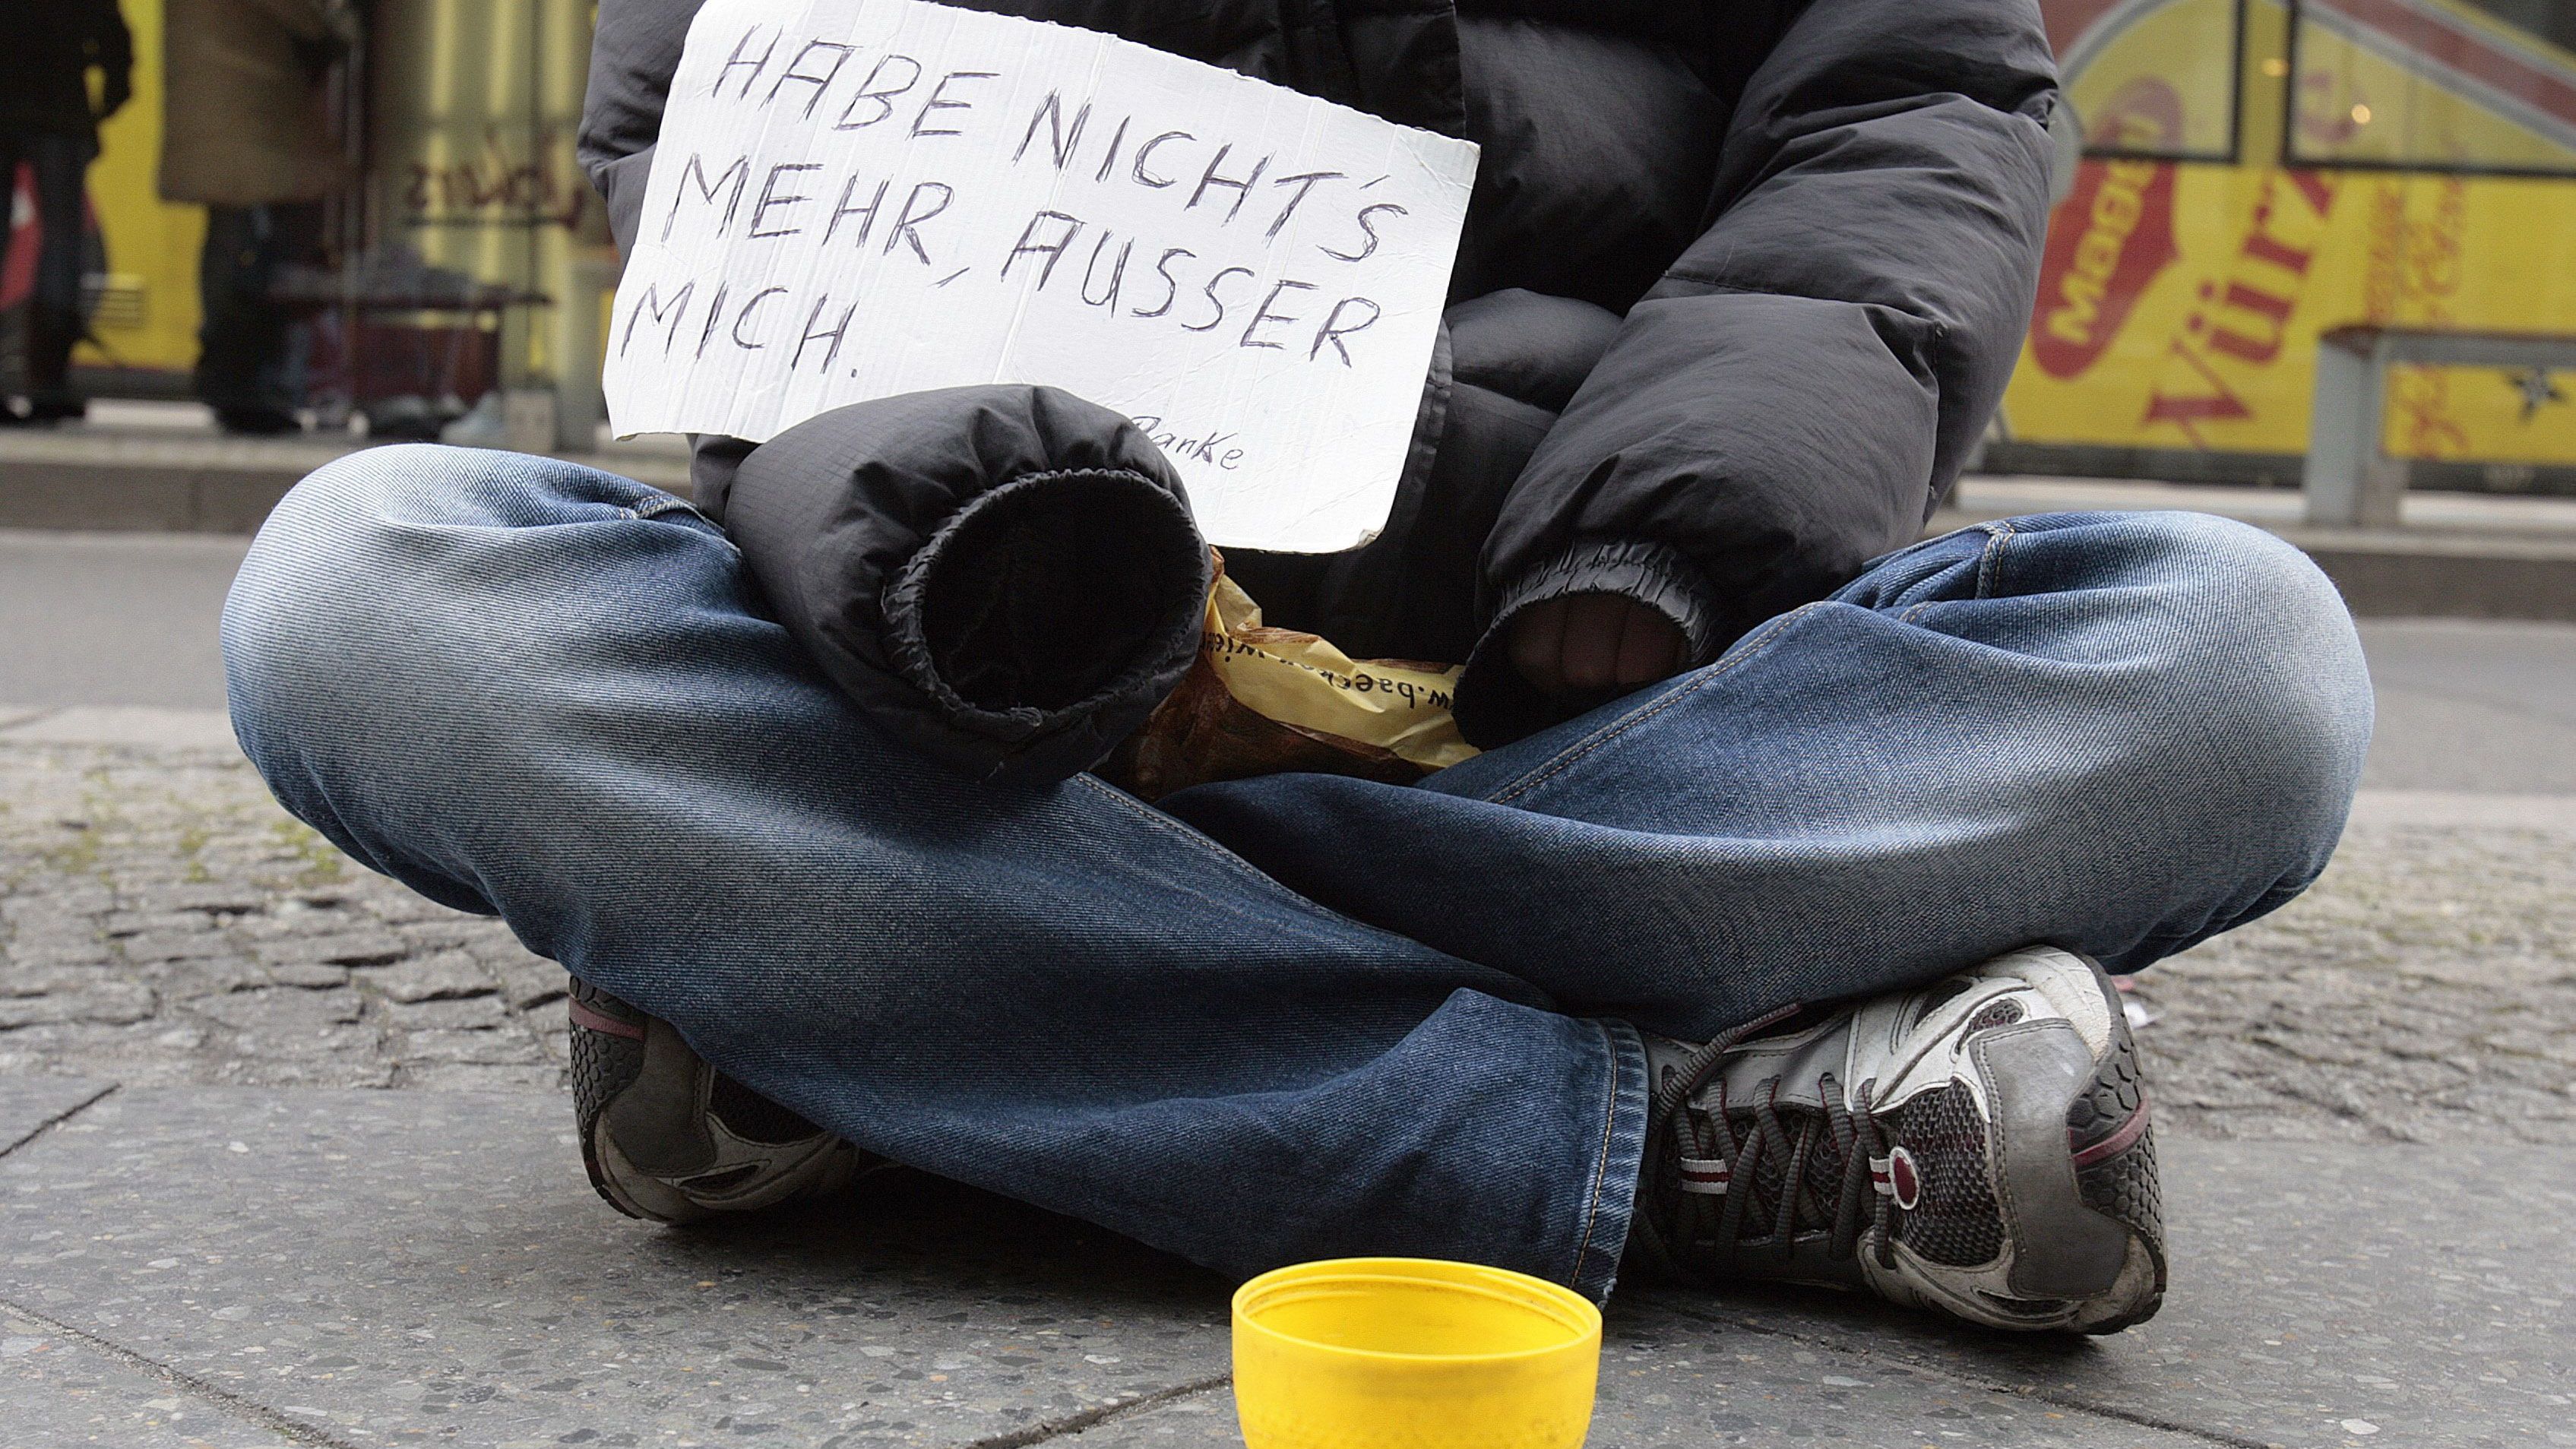 Ein Obdachloser sitzt mit einem Schild auf der Straße und bettelt. Erschreckend: Über 250.000 Menschen gelten in Deutschland als wohnungslos.&nbsp;